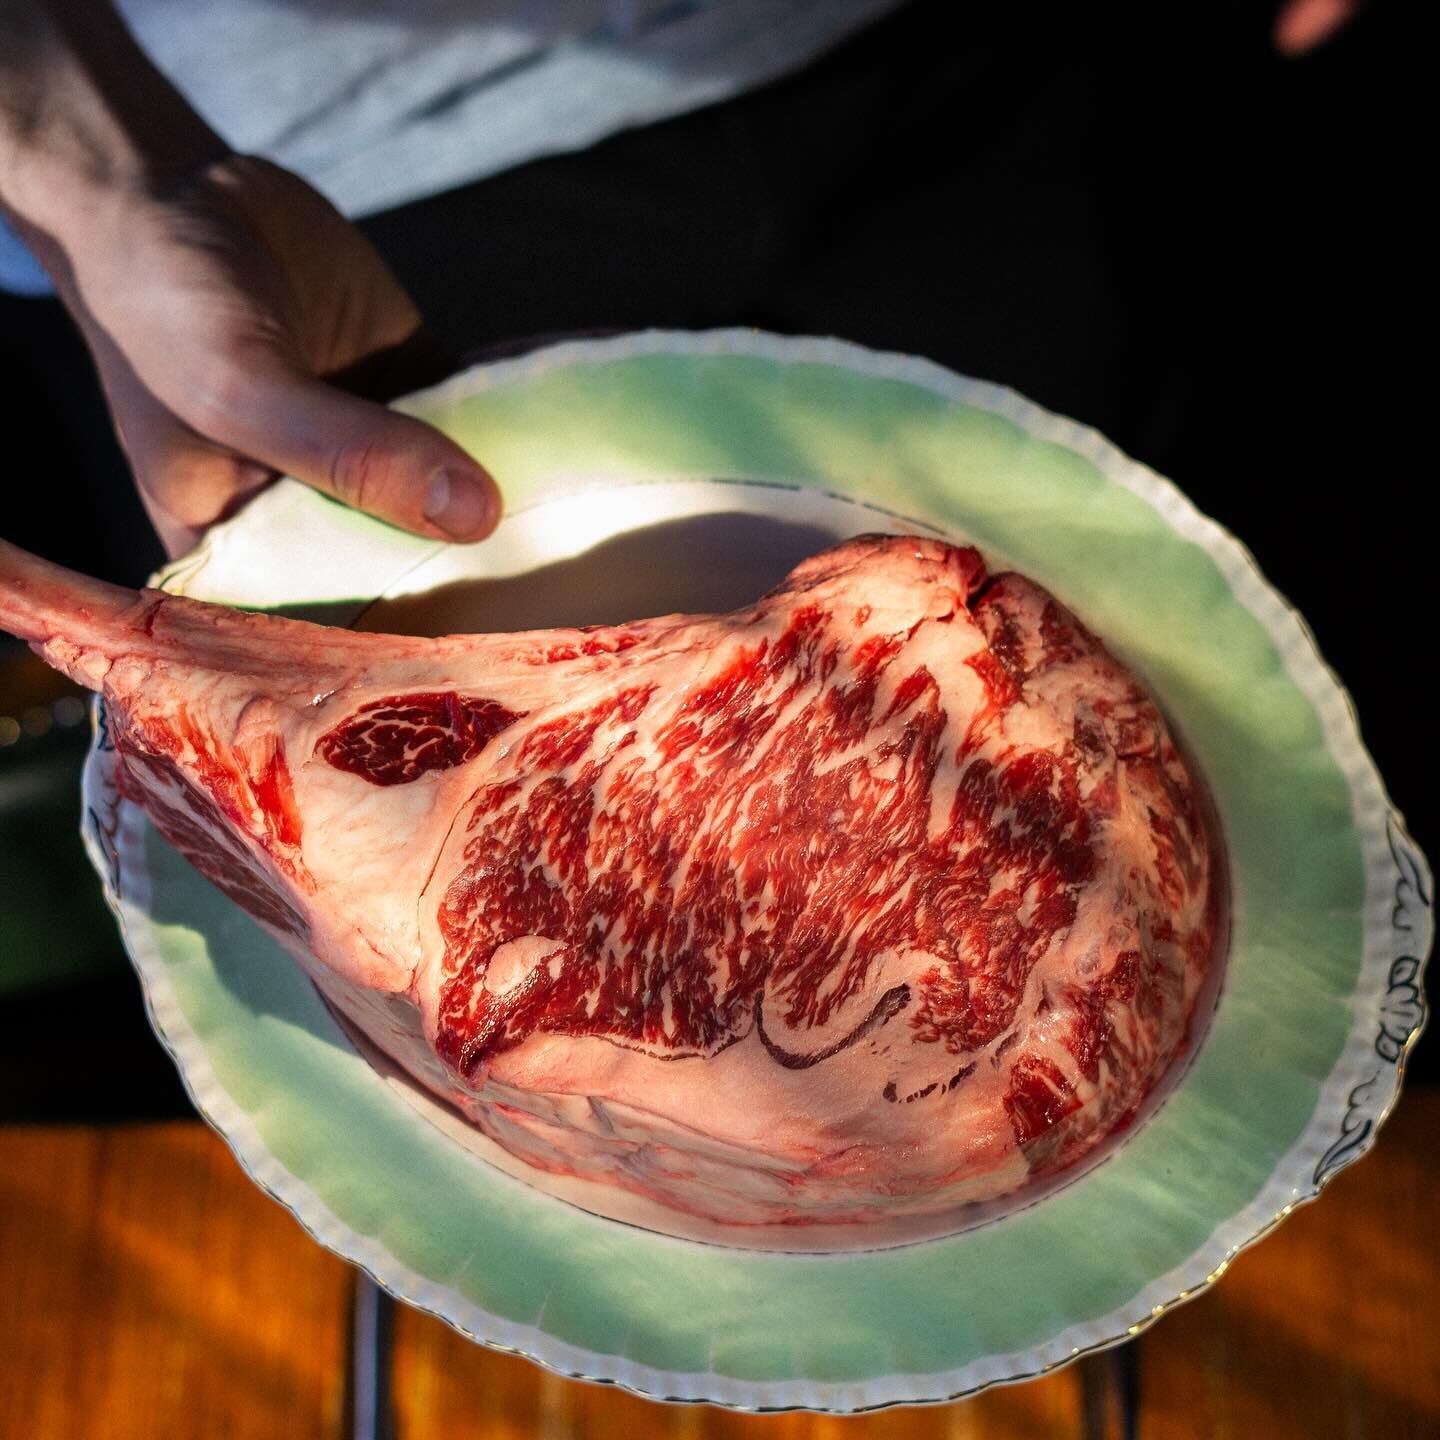 Tomahawk de Wagyu Australien. Disponible pour une dur&eacute;e limit&eacute;e! 🤩

#steak #wagyu #autralianwagyu #meat #steakdinner #butcher